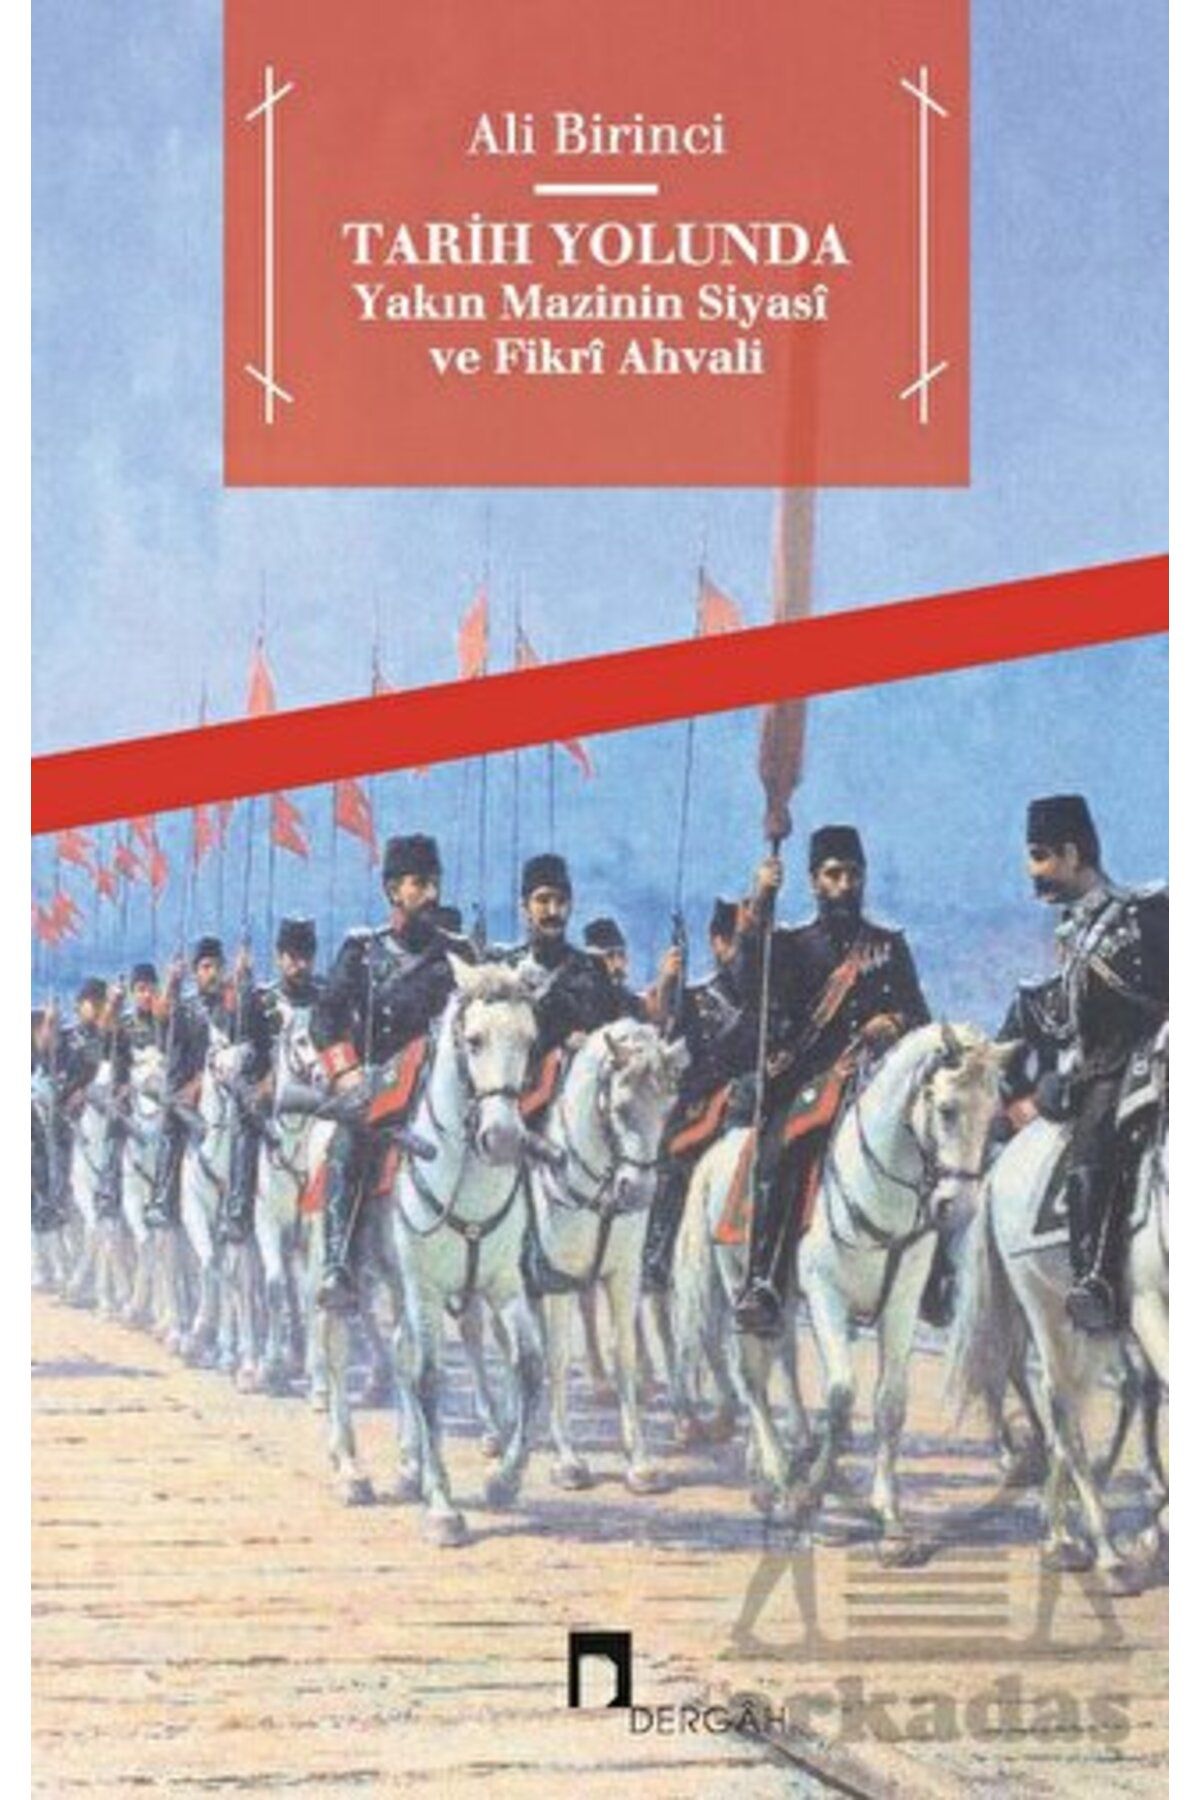 Dergah Yayınları Tarih Yolunda - Yakın Mazinin Siyasi Ve Fikri Ahvali